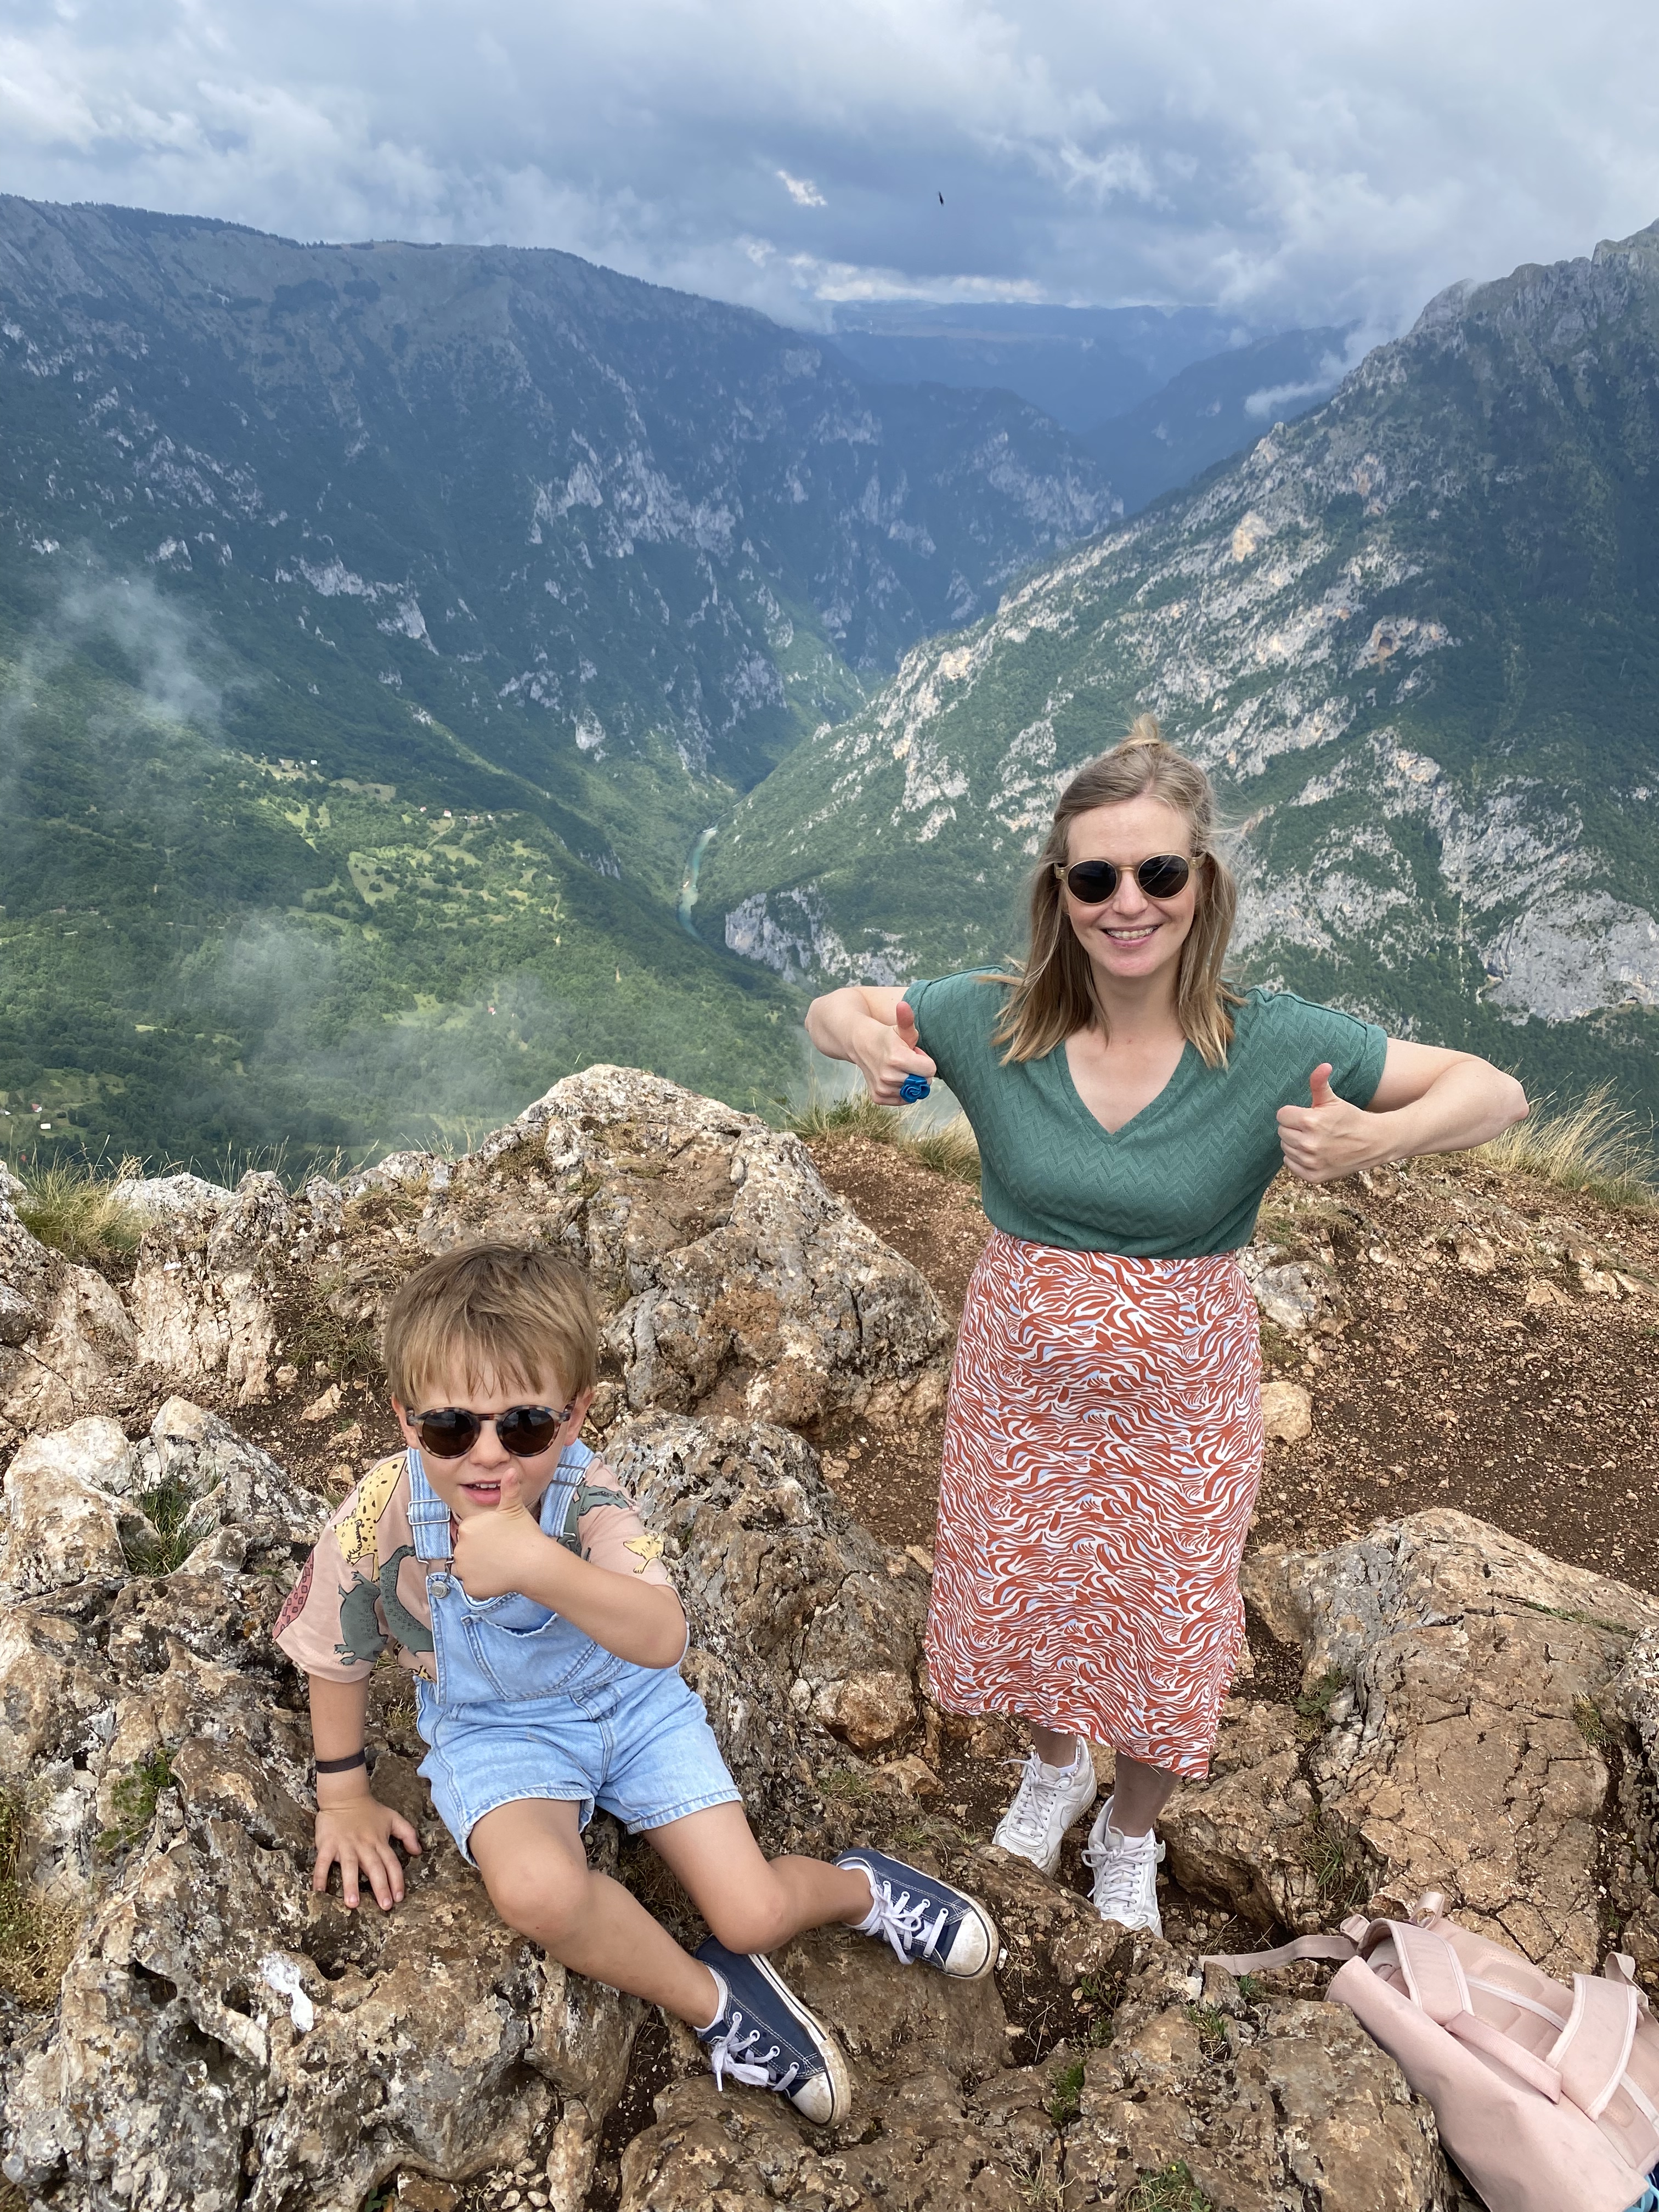 Foto op de top van de Durmitor in Montenegro boven de Tara vallei